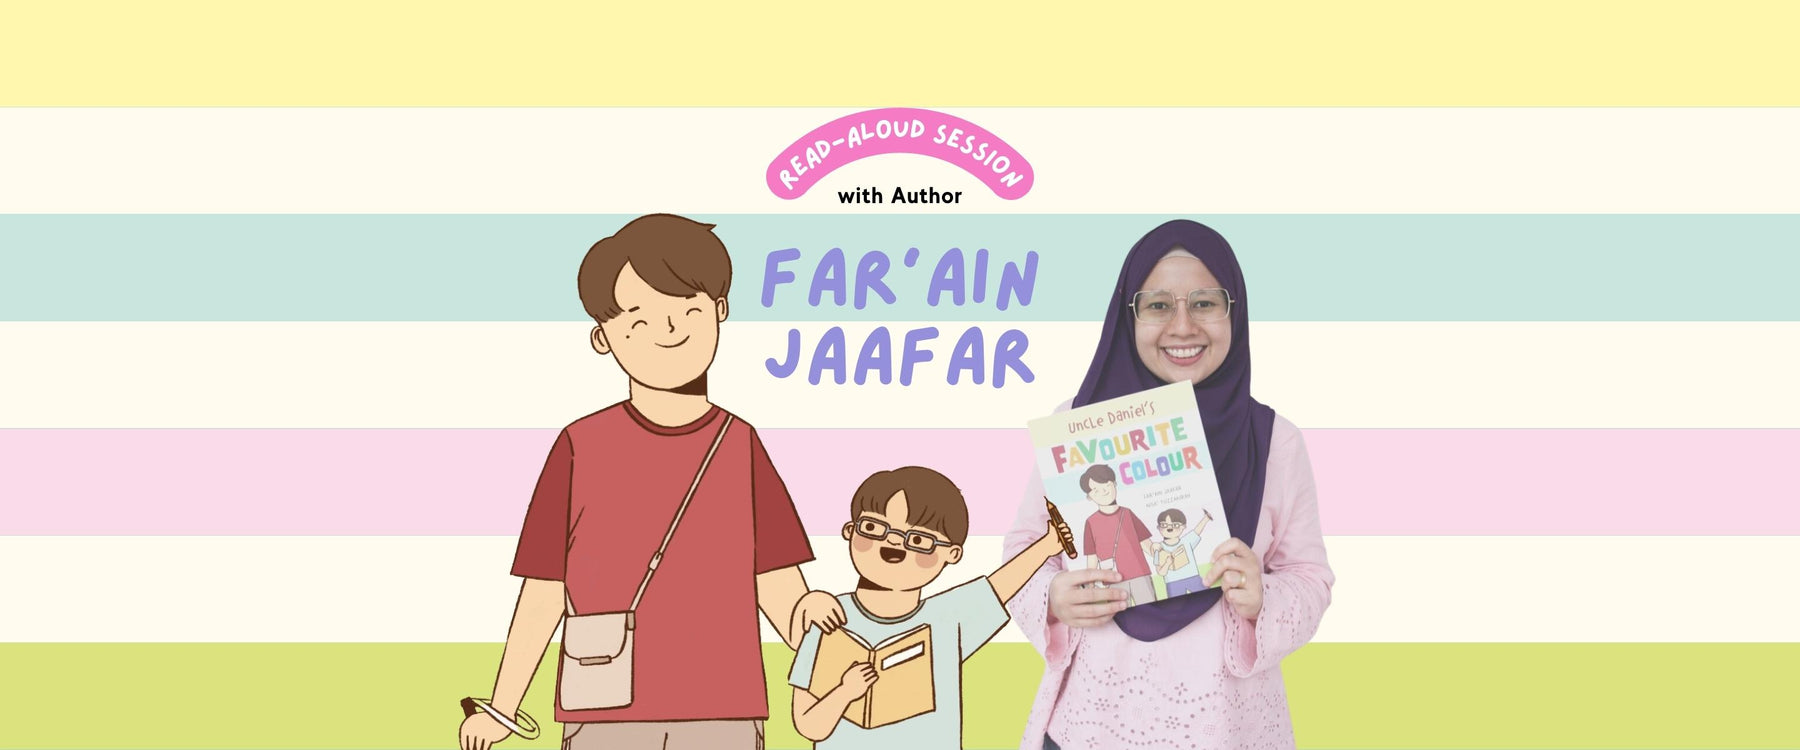 Read-Aloud Session with Far'ain Jaafar